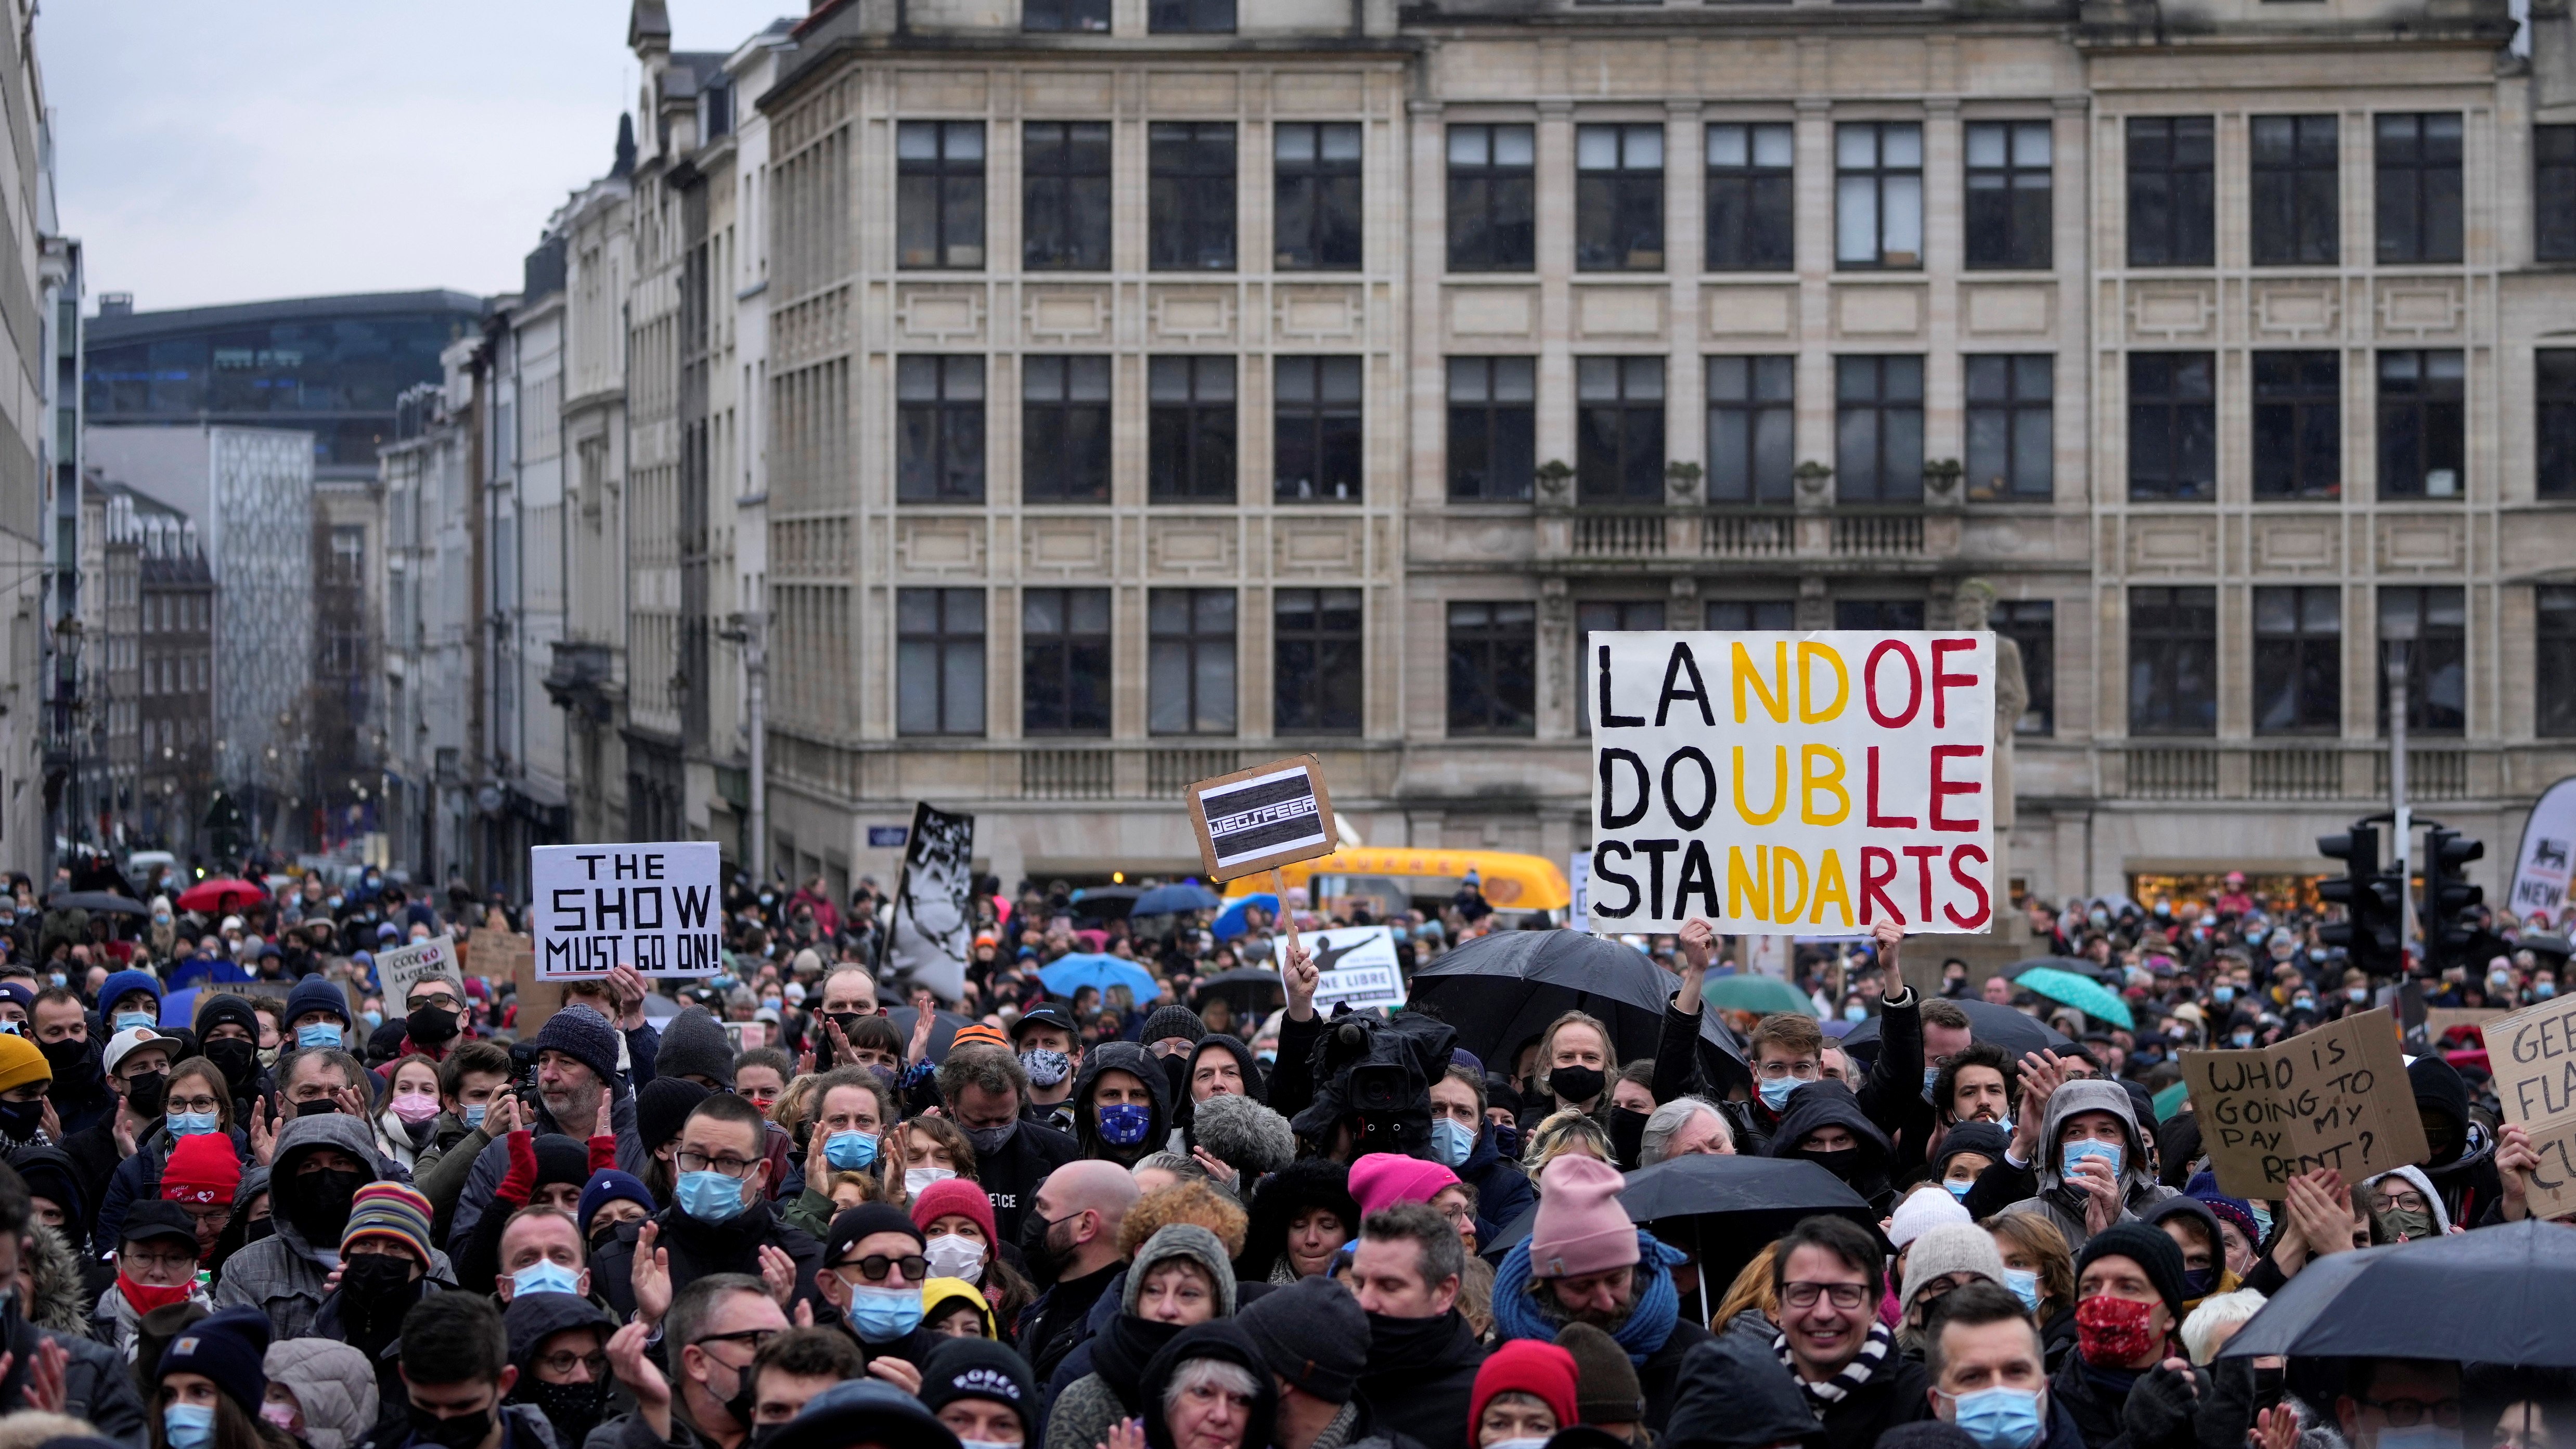 Előadóművészek, rendezvényszervezők, mozitulajdonosok és mások tüntetnek a koronavírus omikron variánsának terjedésének korlátozása céljából bevezetett, főként a kulturális szektort érintő korlátozások ellen Brüsszelben 2021. december 26-án. A kettős mérce országa feliratú táblát tart az egyik tiltakozó. (Fotó: MTI/AP/Virginia Mayo)